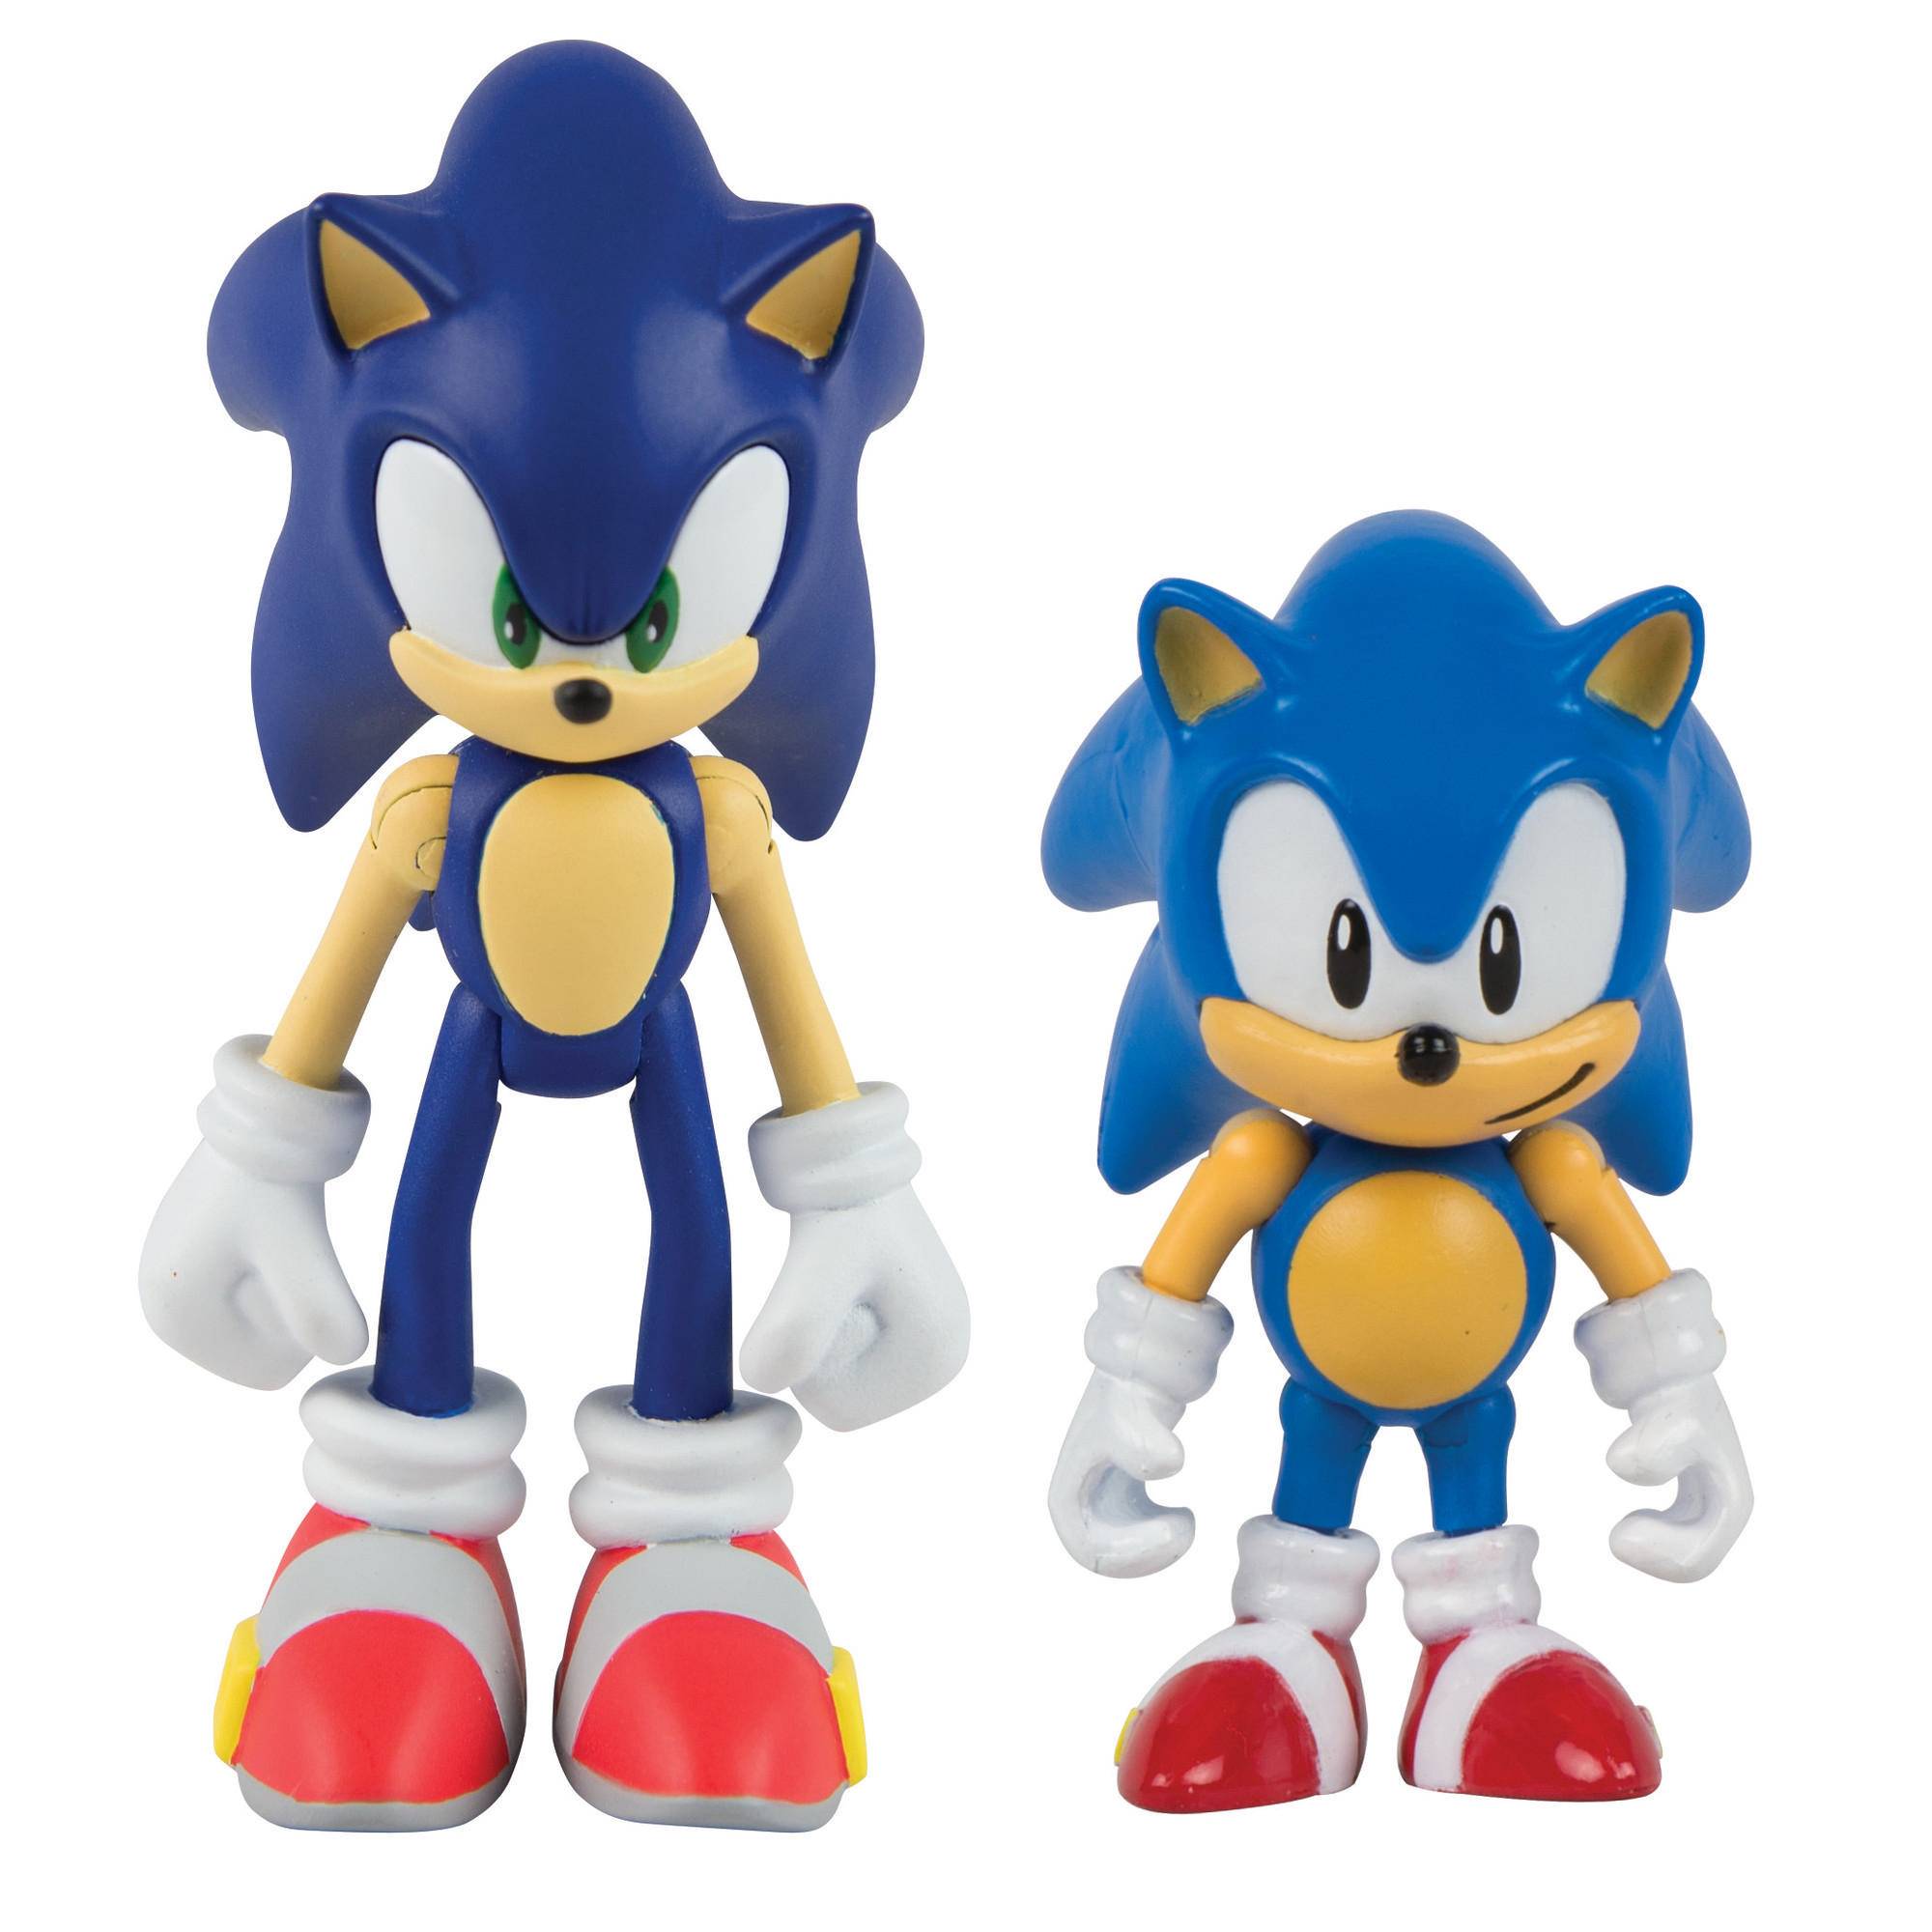 Оригинальный sonic. Sonic / фигурка "Modern Sonic Vinyl". Фигурки Sonic the Hedgehog. Tomy Classic Sonic Toys. Sonic Classic игрушка.